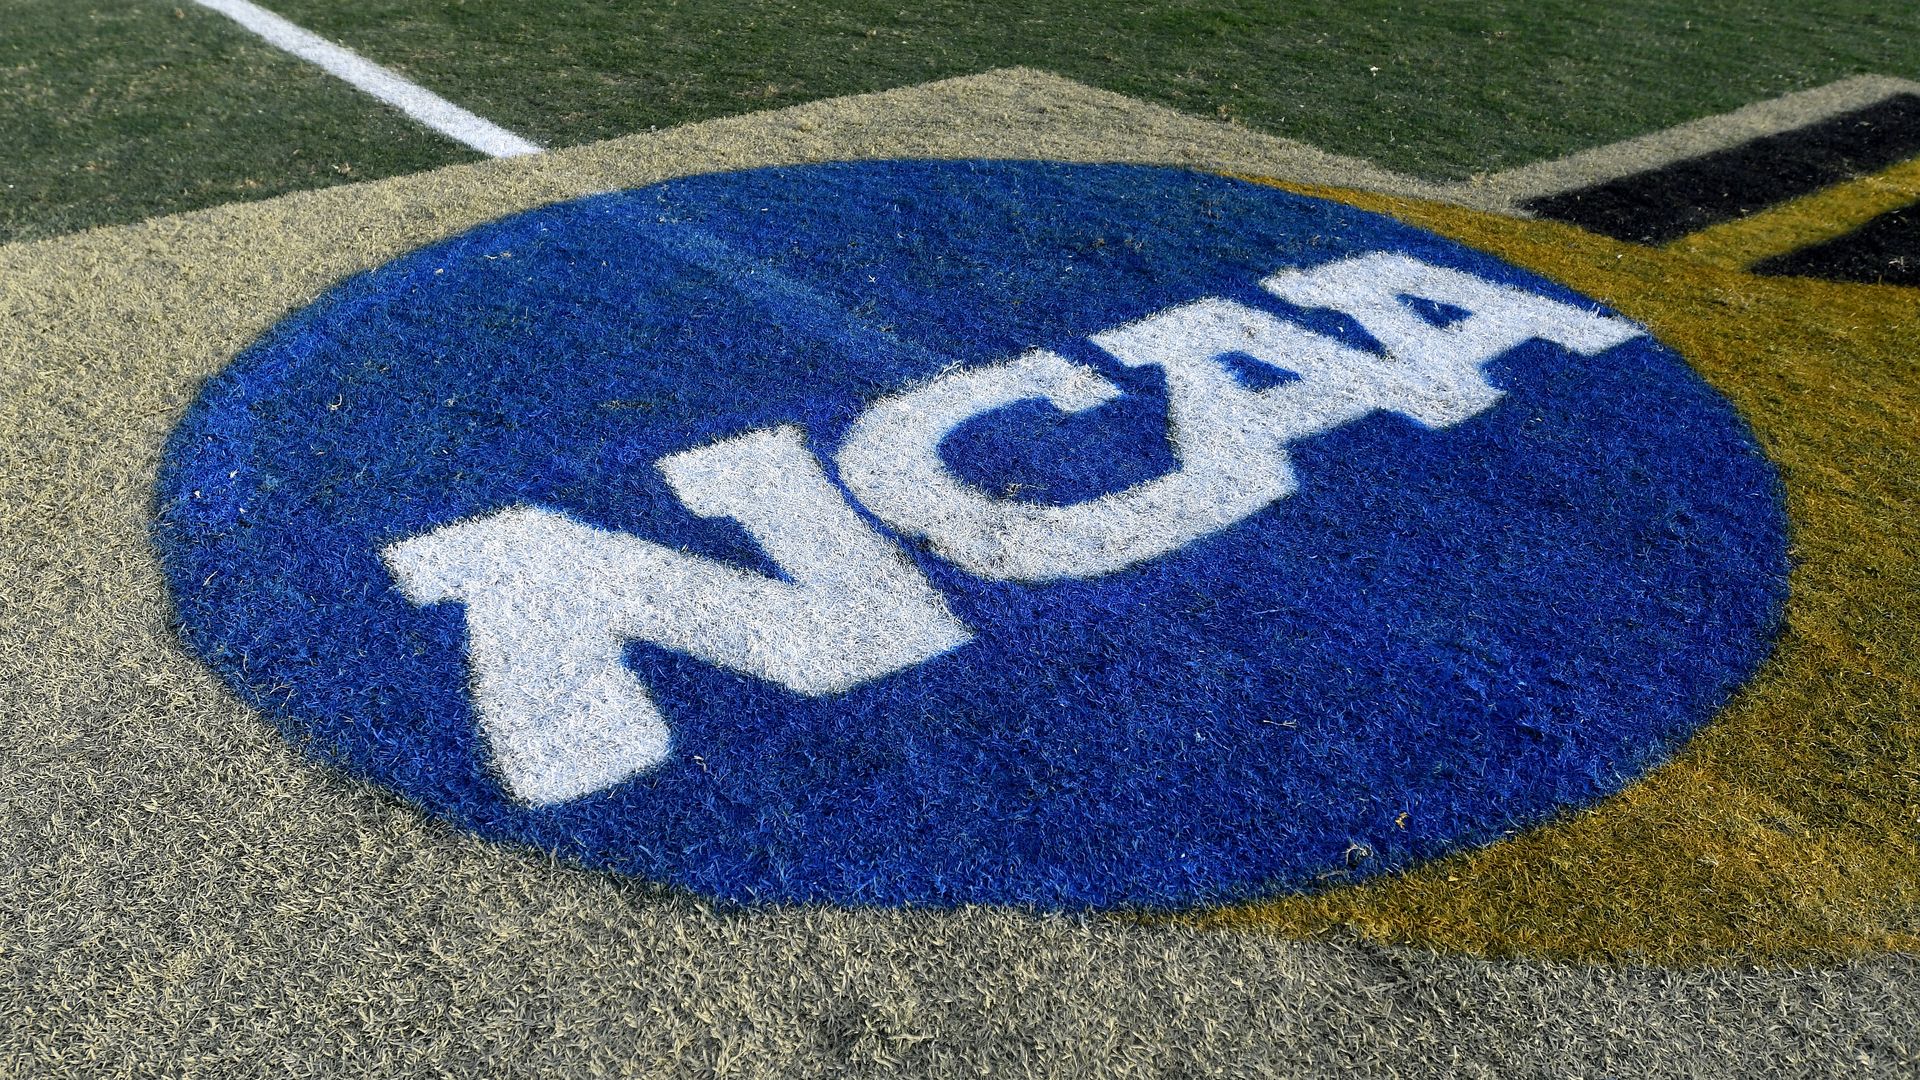 The NCAA logo